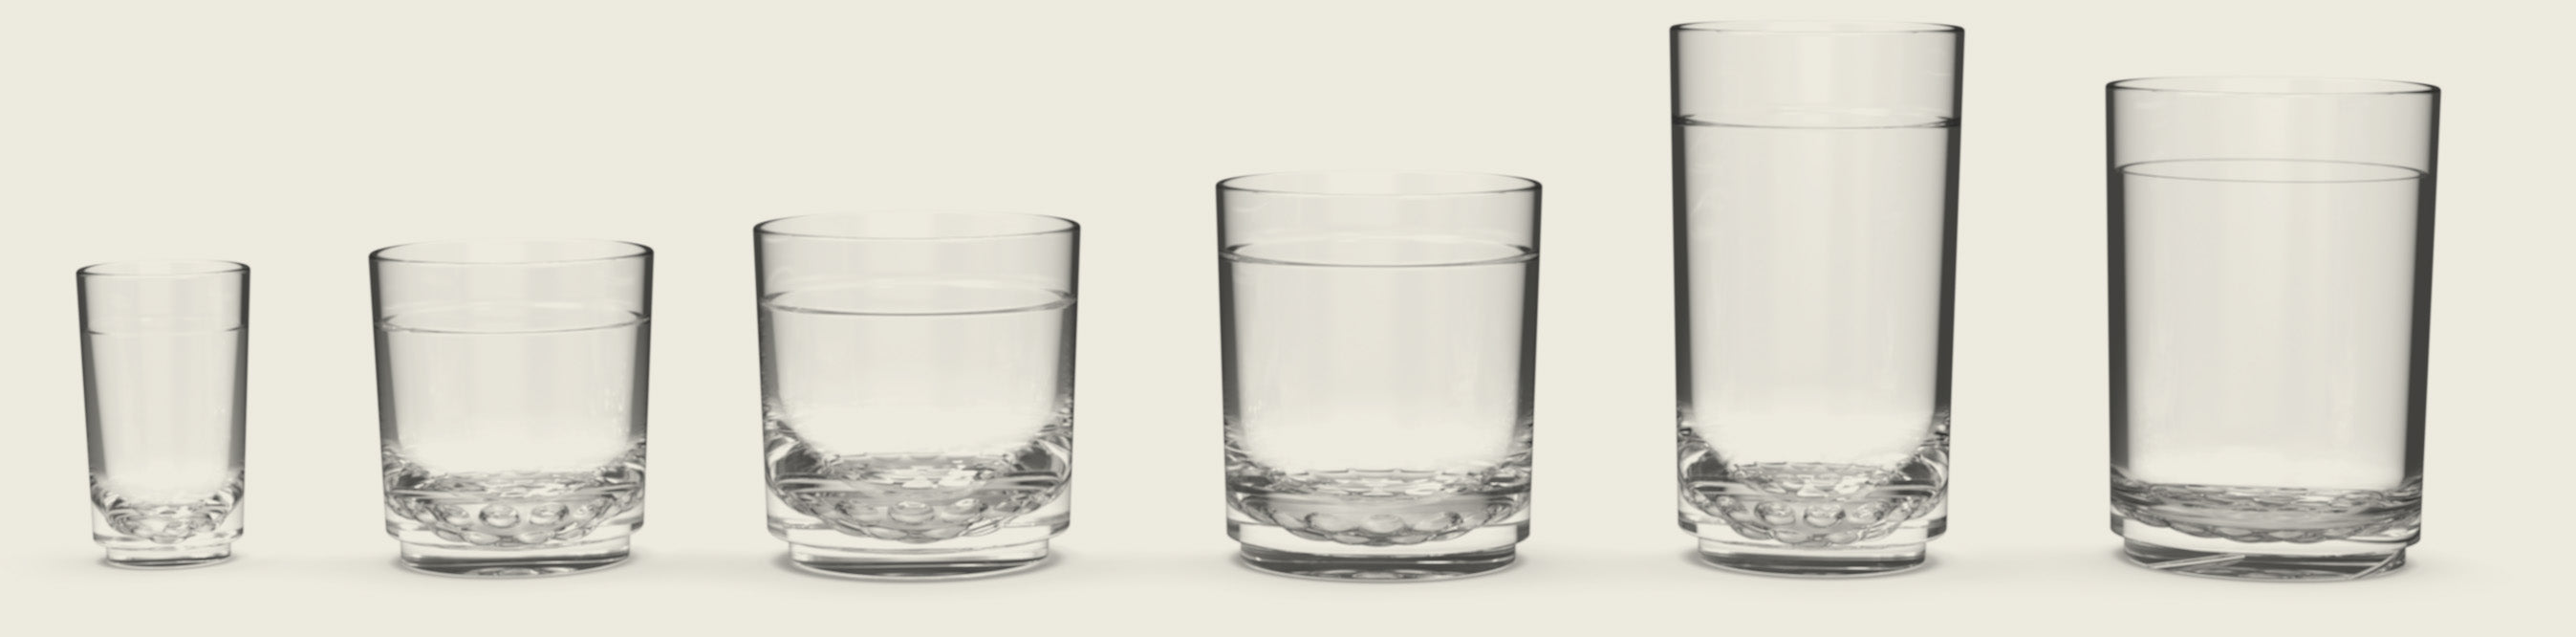 Drinique Unbreakable Elite Pint & Rocks 12-piece Glassware Set